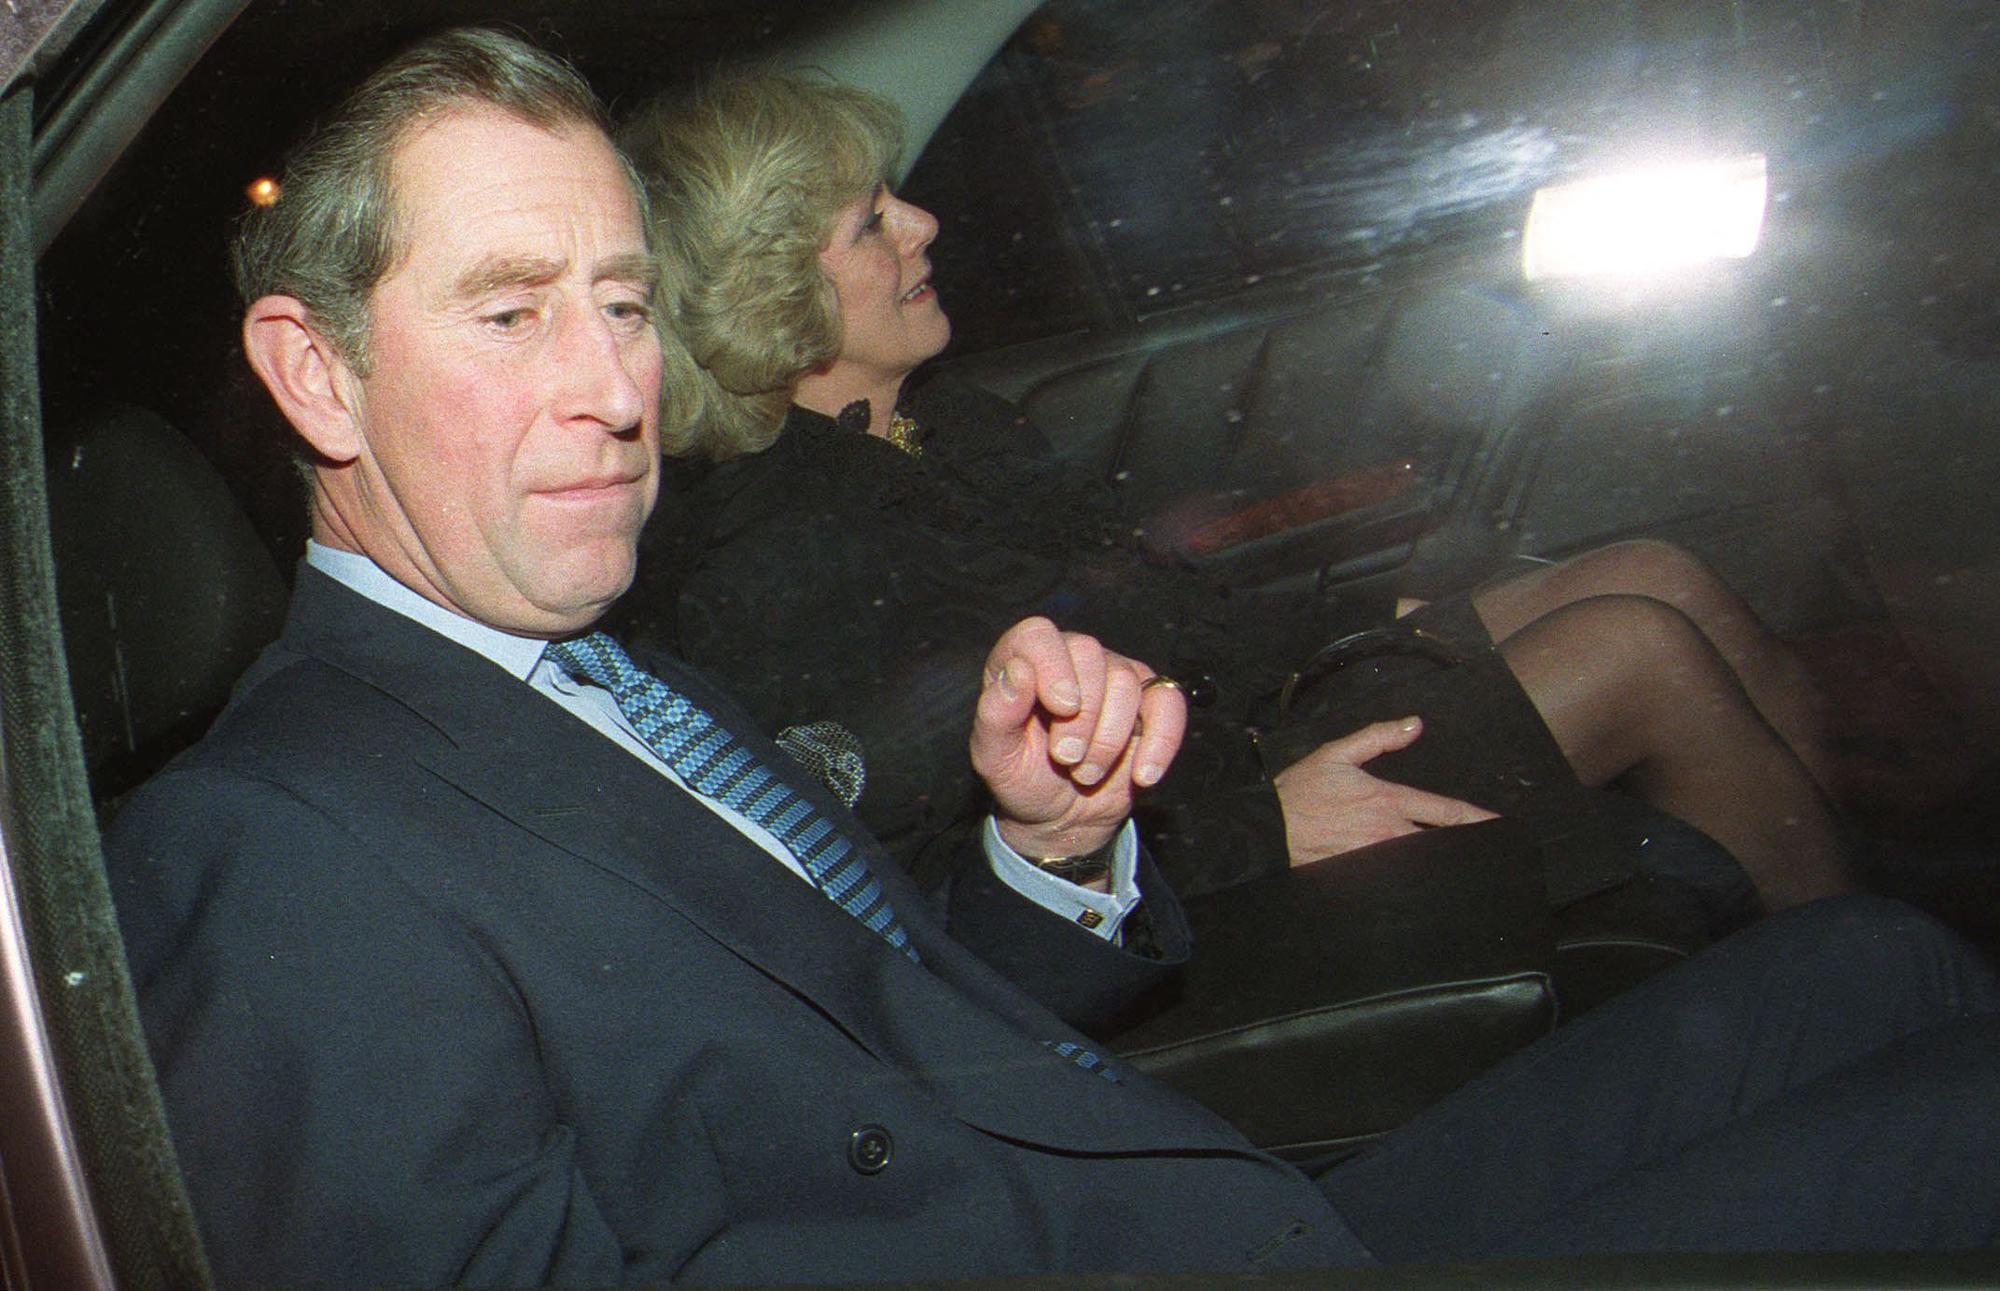 Le prince de Galles et sa compagne de longue date Camilla Parker Bowles quittent l'hôtel Ritz à Londres, le 28 janvier 1999, après avoir assisté au 50e anniversaire de la sœur de Camilla, Annabel Elliott. C'est la première fois que le couple, qui est ami depuis plus de 25 ans, apparaît ensemble en public. [AFP - PETER JORDAN]